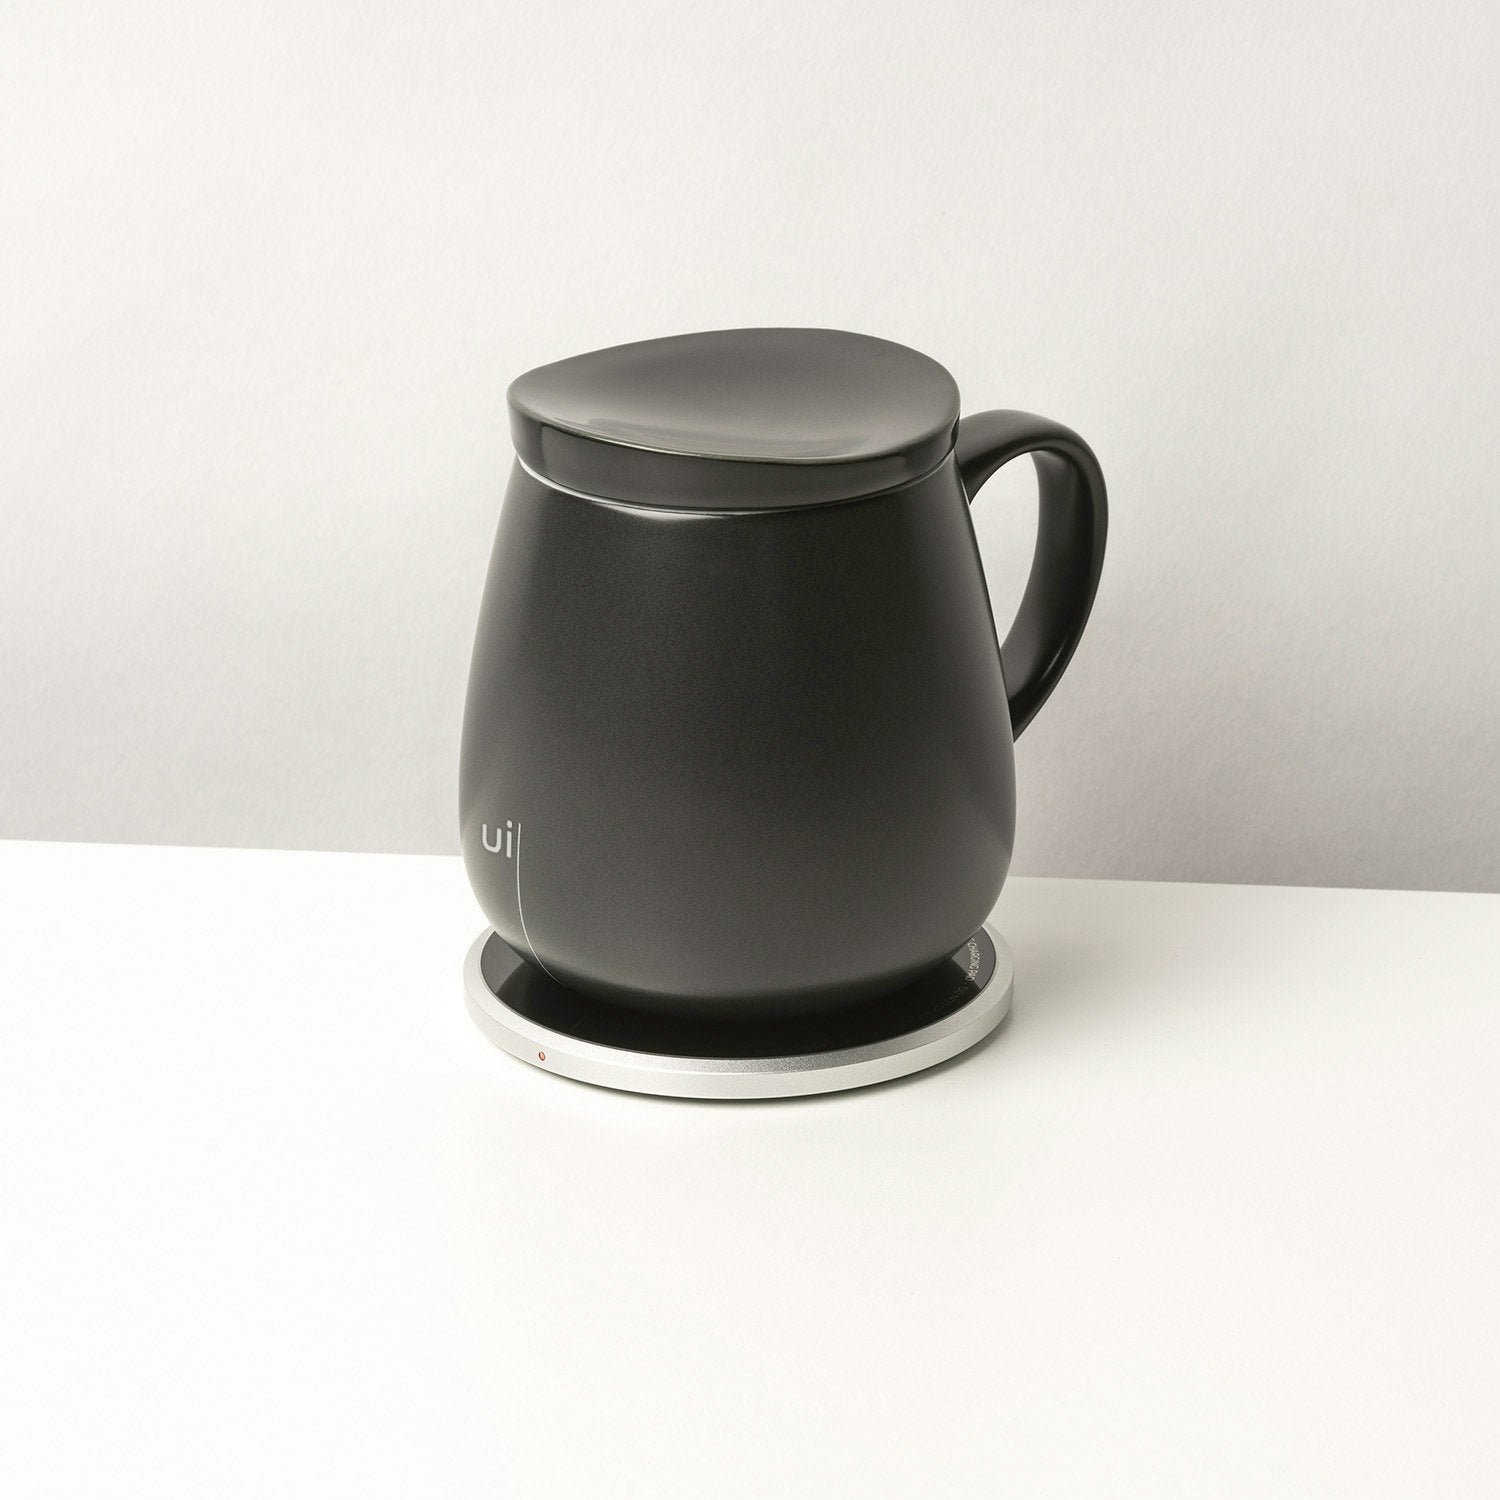 Large black mug with lid on heating pad